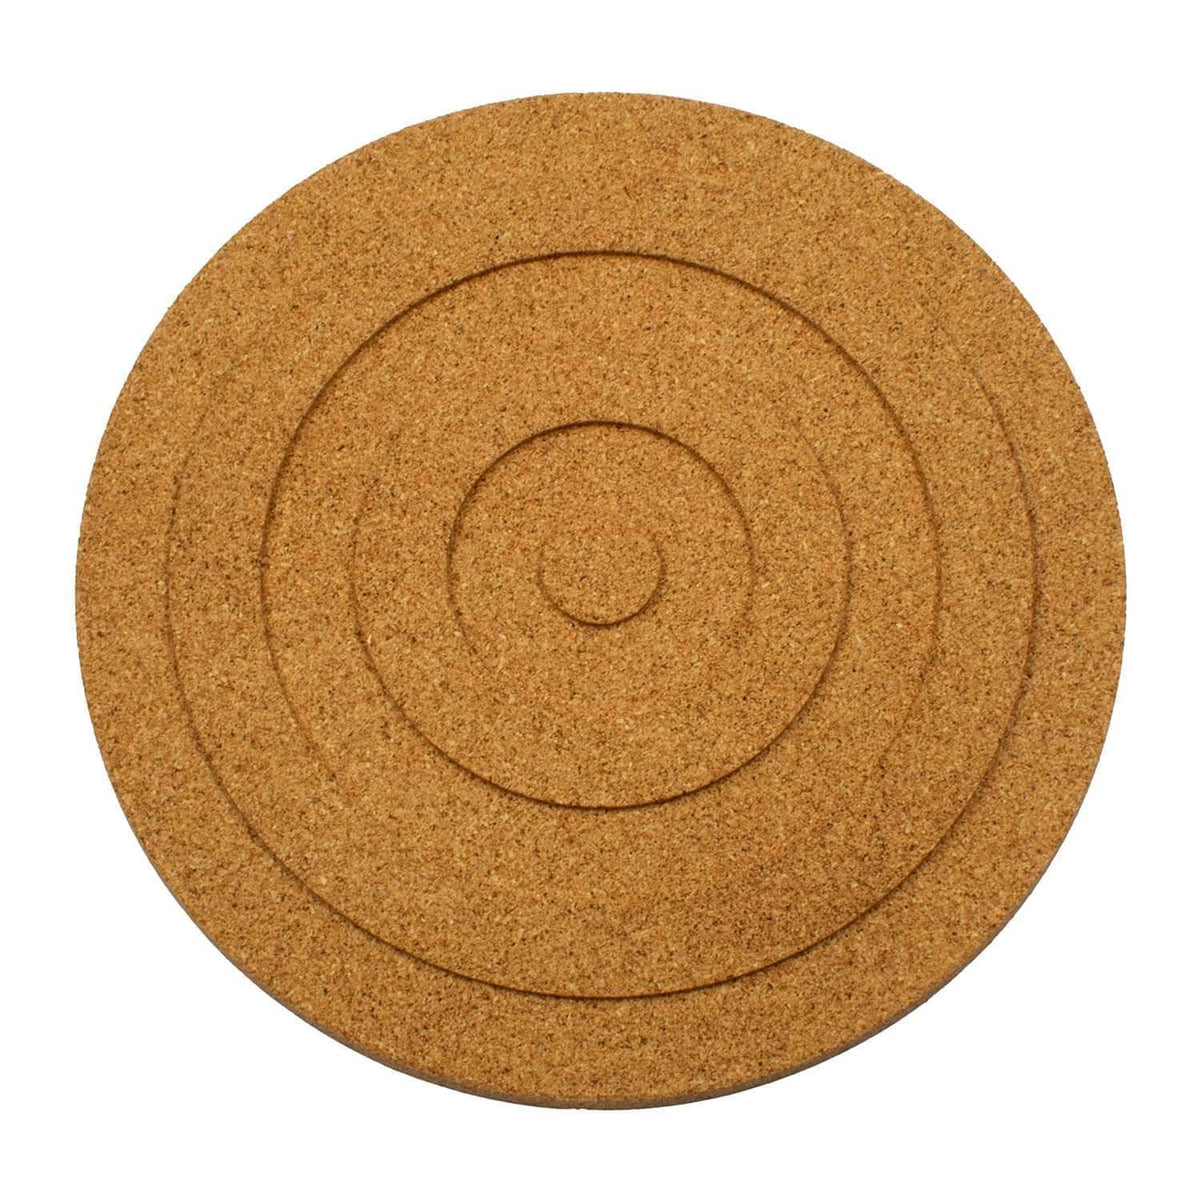 Natural cork circular trivet